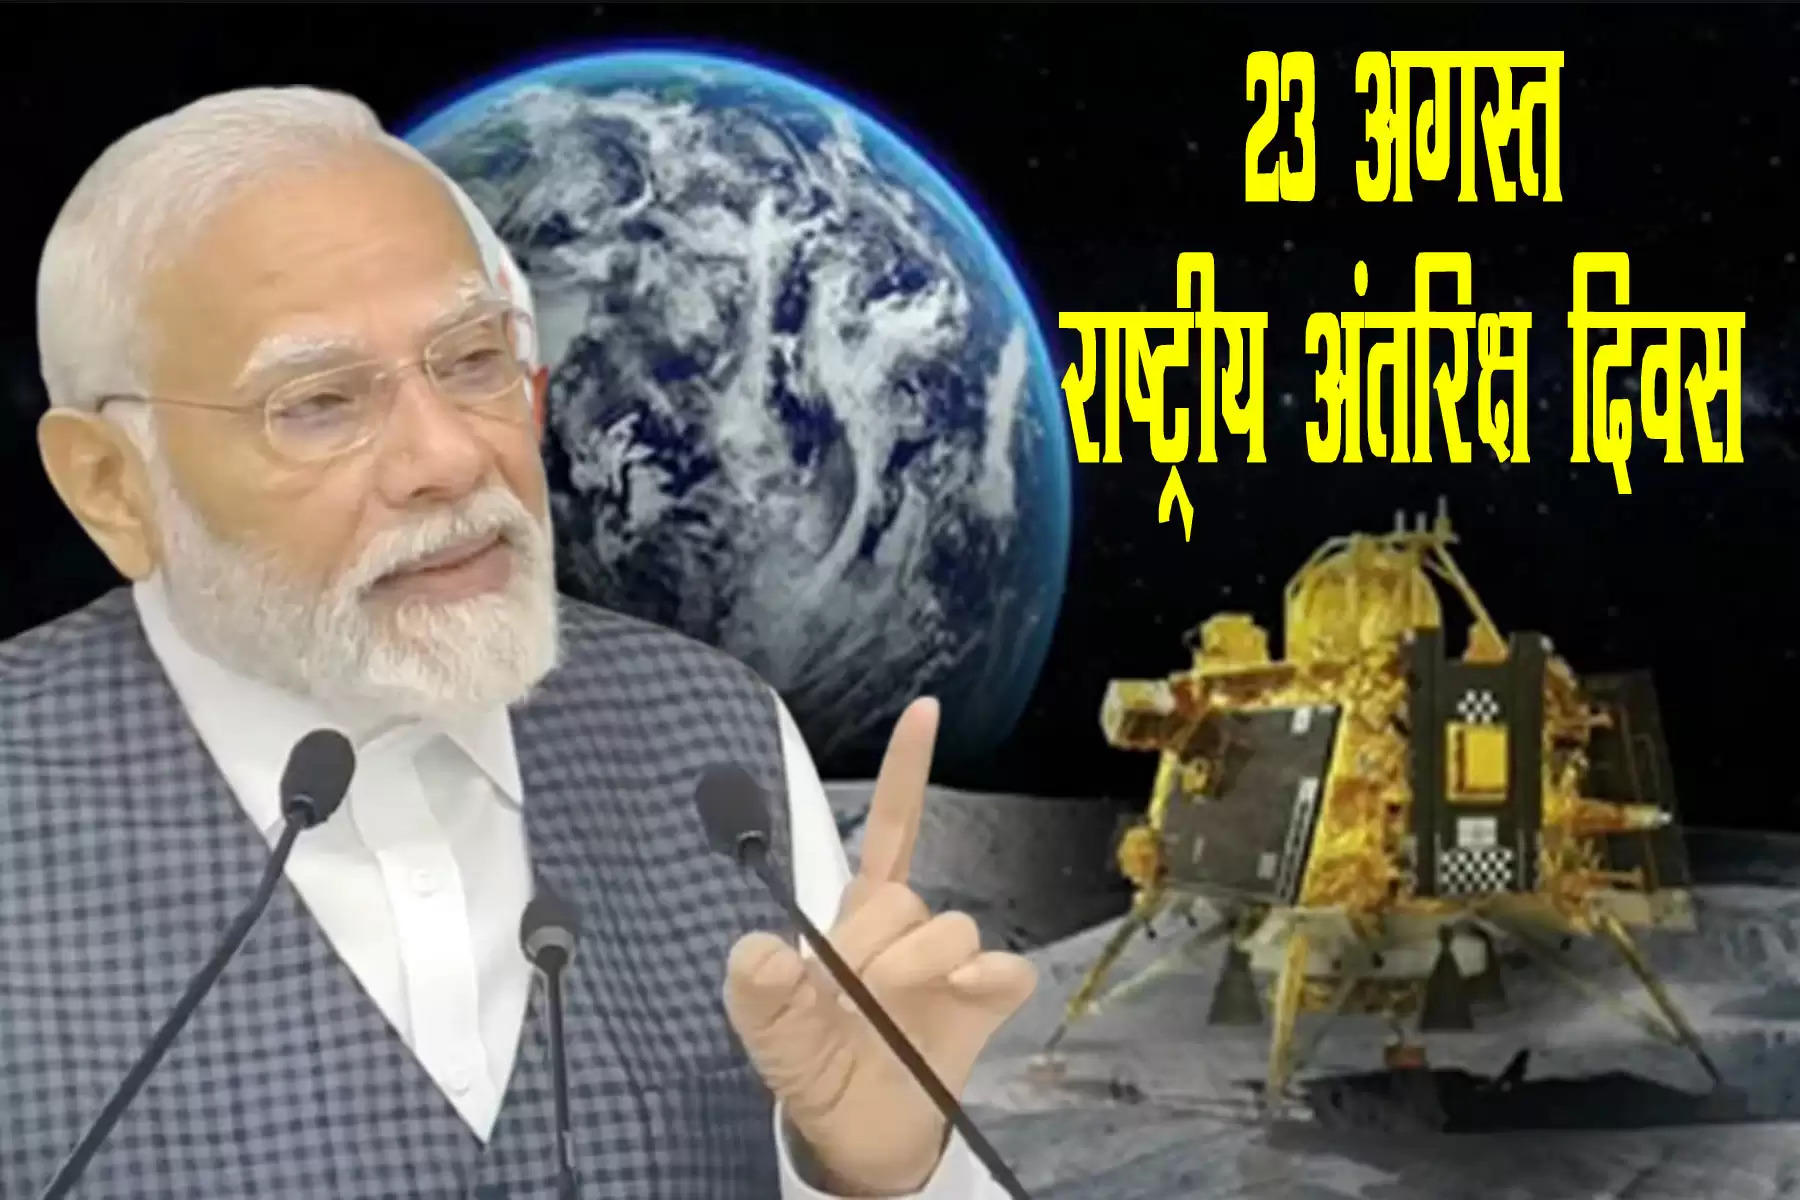 प्रधानमंत्री नरेंद्र मोदी ने कहा कि चंद्रयान-3 के चंद्रमा के दक्षिणी ध्रुव पर उतरने के गौरवशाली दिन यानी 23 अगस्त को राष्ट्रीय अंतरिक्ष दिवस (National Space Day)  के रूप में मनाया जाएगा। पीएम मोदी ने शनिवार को भारतीय अंतरिक्ष संगठन (ISRO) टीम के वैज्ञानिकों से मुलाकात के दौरान यह घोषणा की। उन्होंने यह भी कहा कि चंद्रयान-2 के लैंडिंग प्वाइंट का नाम तिरंगा और चंद्रयान-3 के लैंडिंग प्वाइंट का नाम शिवशक्ति होगा।